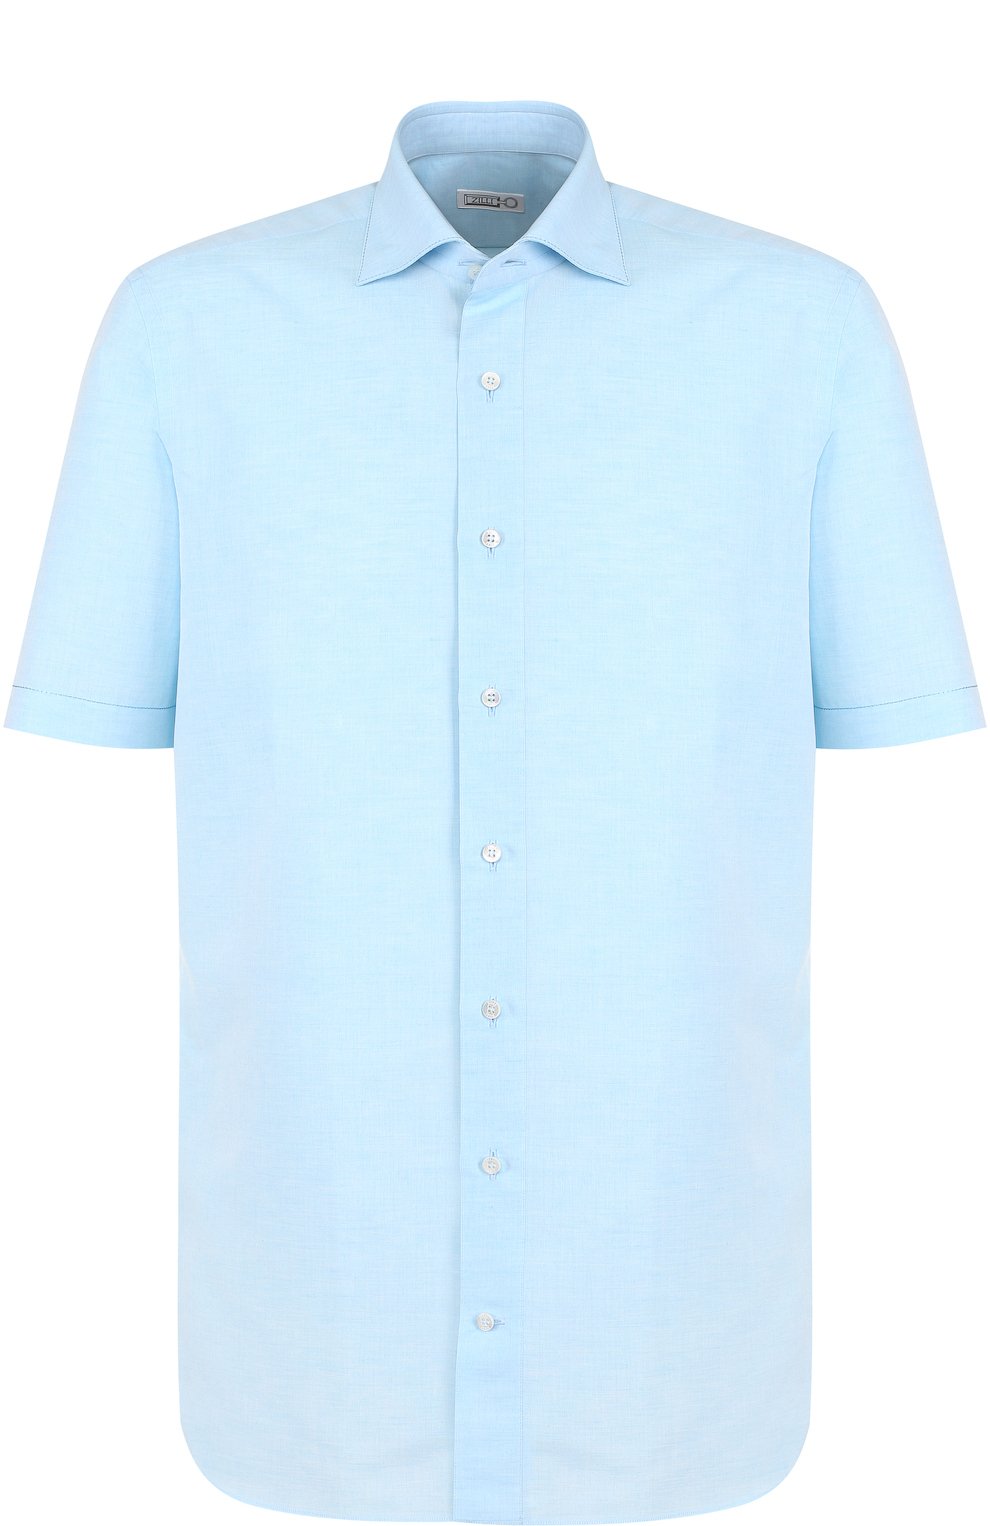 Рубашки Zilli, Рубашка из смеси льна и хлопка с короткими рукавами Zilli, Италия, Голубой, Лен: 55%; Хлопок: 45%;, 3517597  - купить